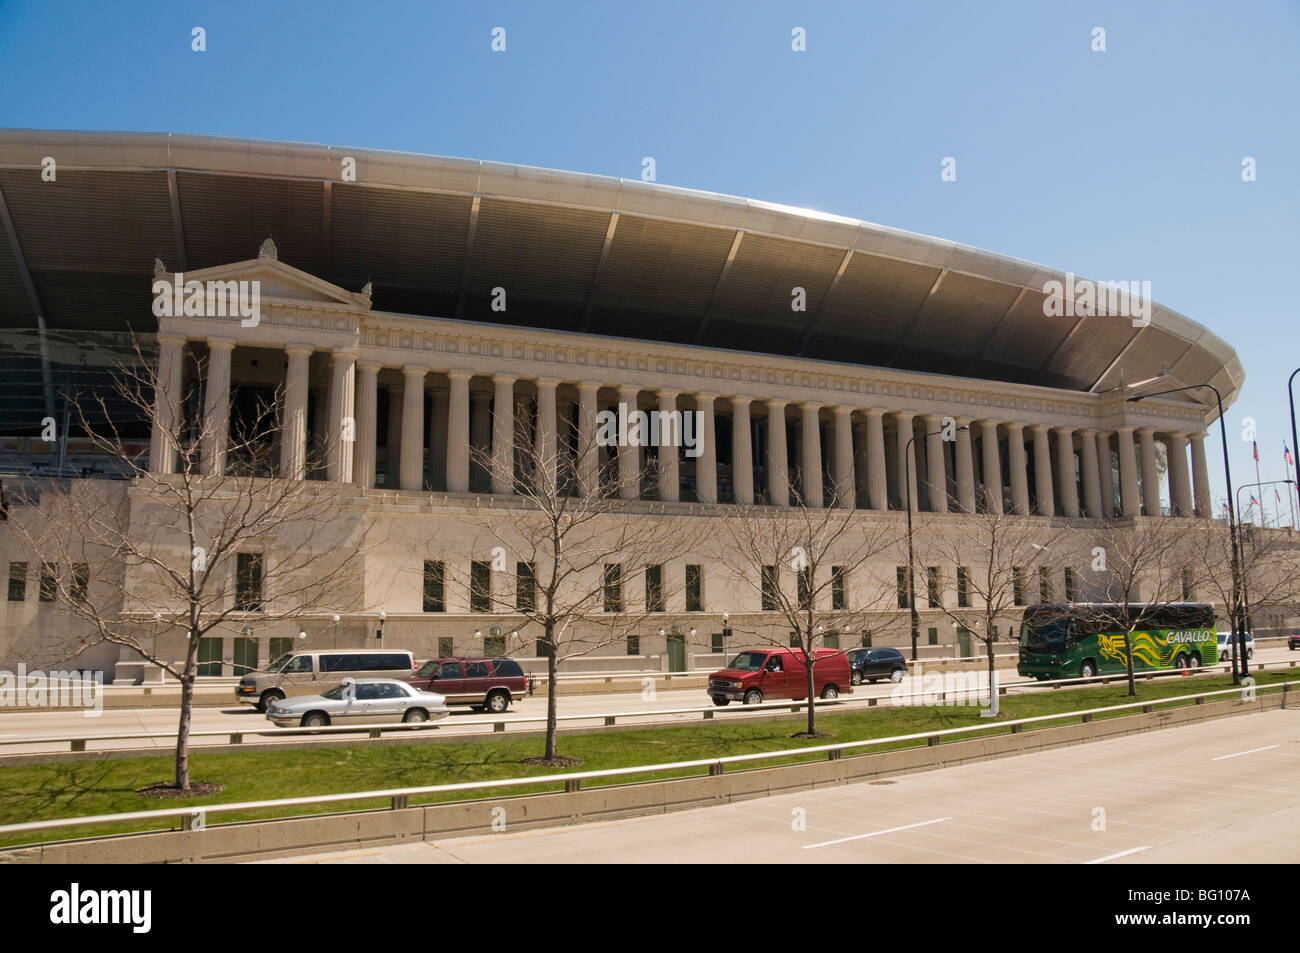 Soldat-Stadion, Chicago, Illinois, Vereinigte Staaten von Amerika, Nordamerika Stockfoto